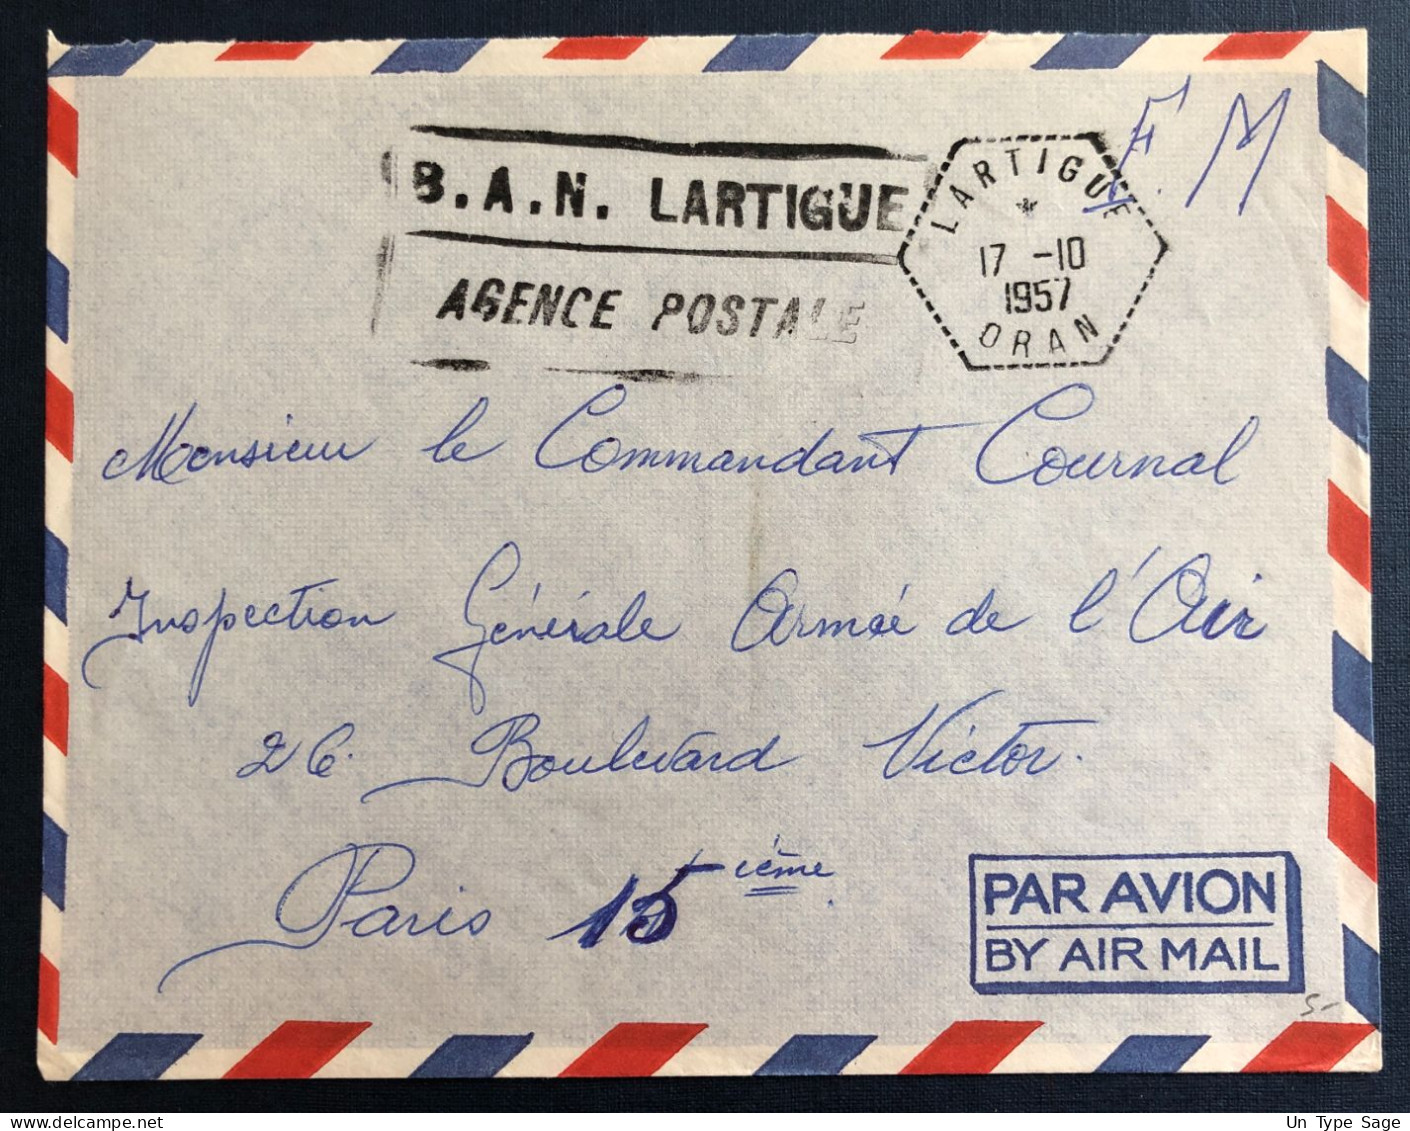 Algérie, Sur Enveloppe TAD Lartigue, Oran 17.10.1957 + Griffe B.A.N. LARTIGUE / AGENCE POSTALE - (B3349) - Cartas & Documentos